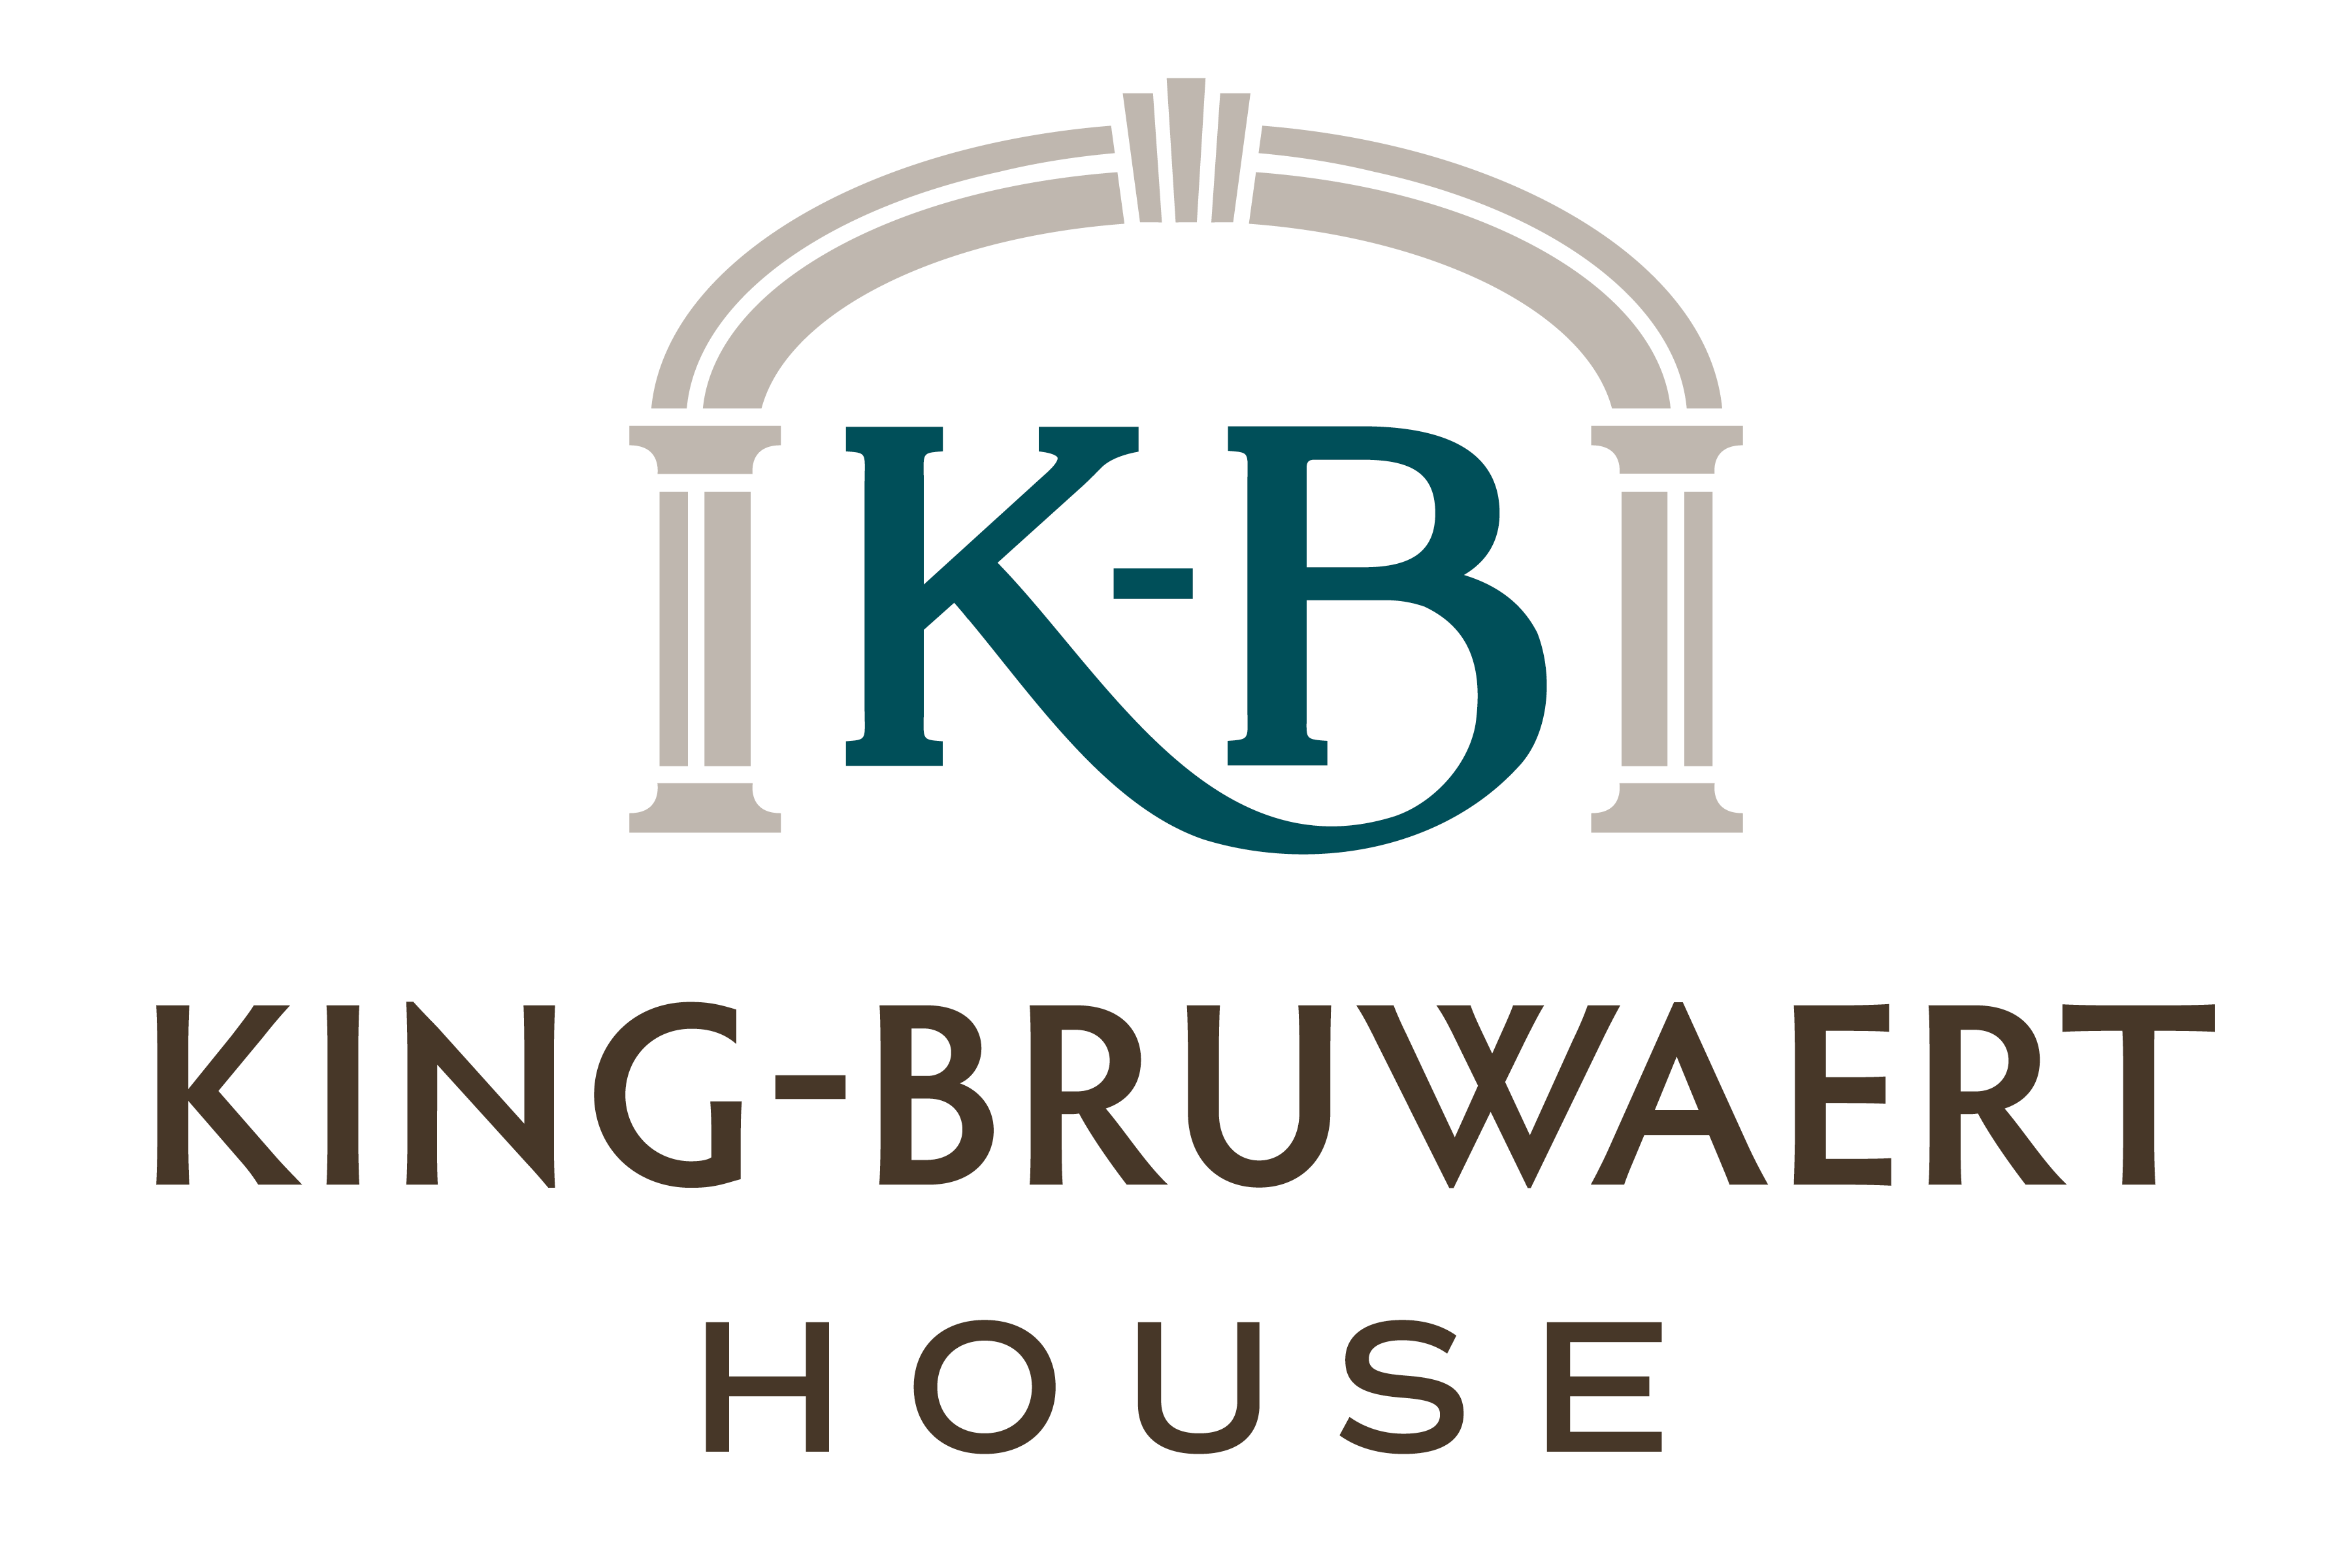 King-Bruwaert House